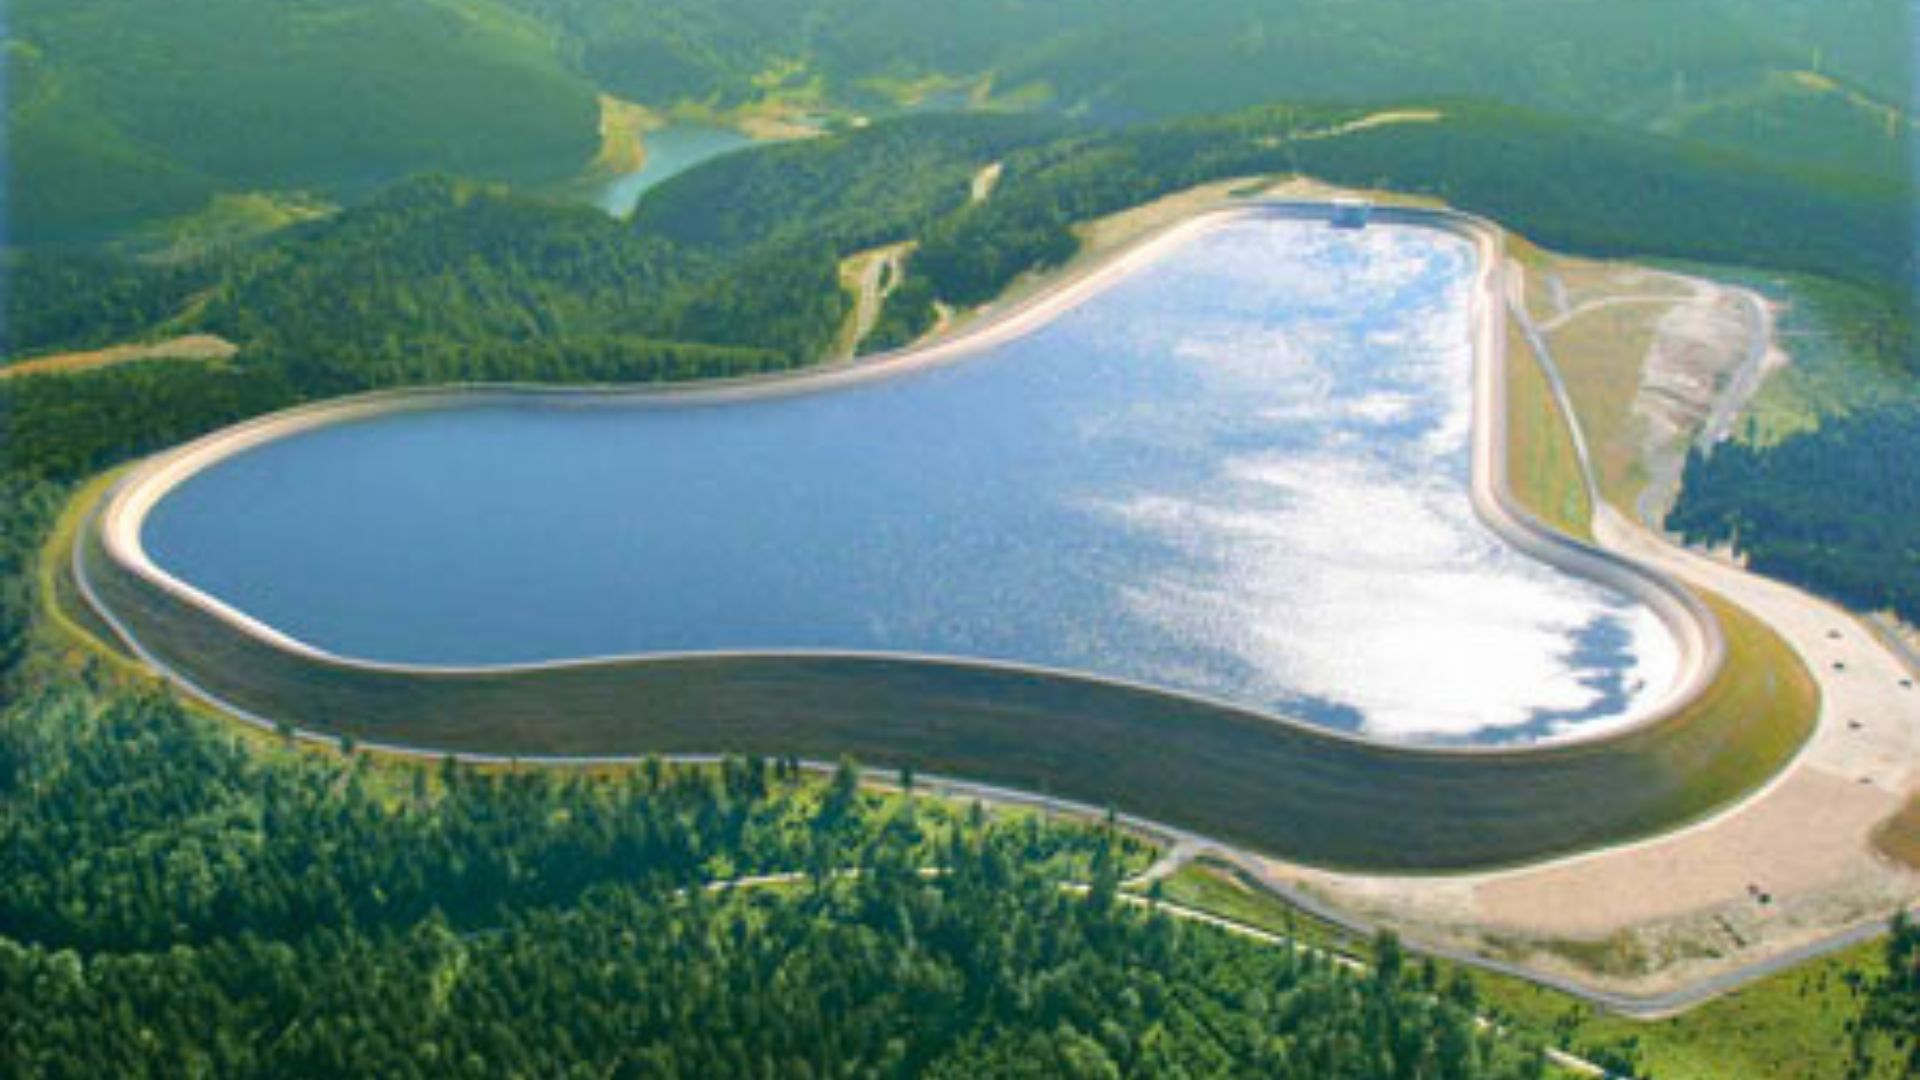 क्यानडासँग ८ हजार गिगावाट पम्प स्टोरेज जलविद्युत उत्पादनको सम्भाव्यता